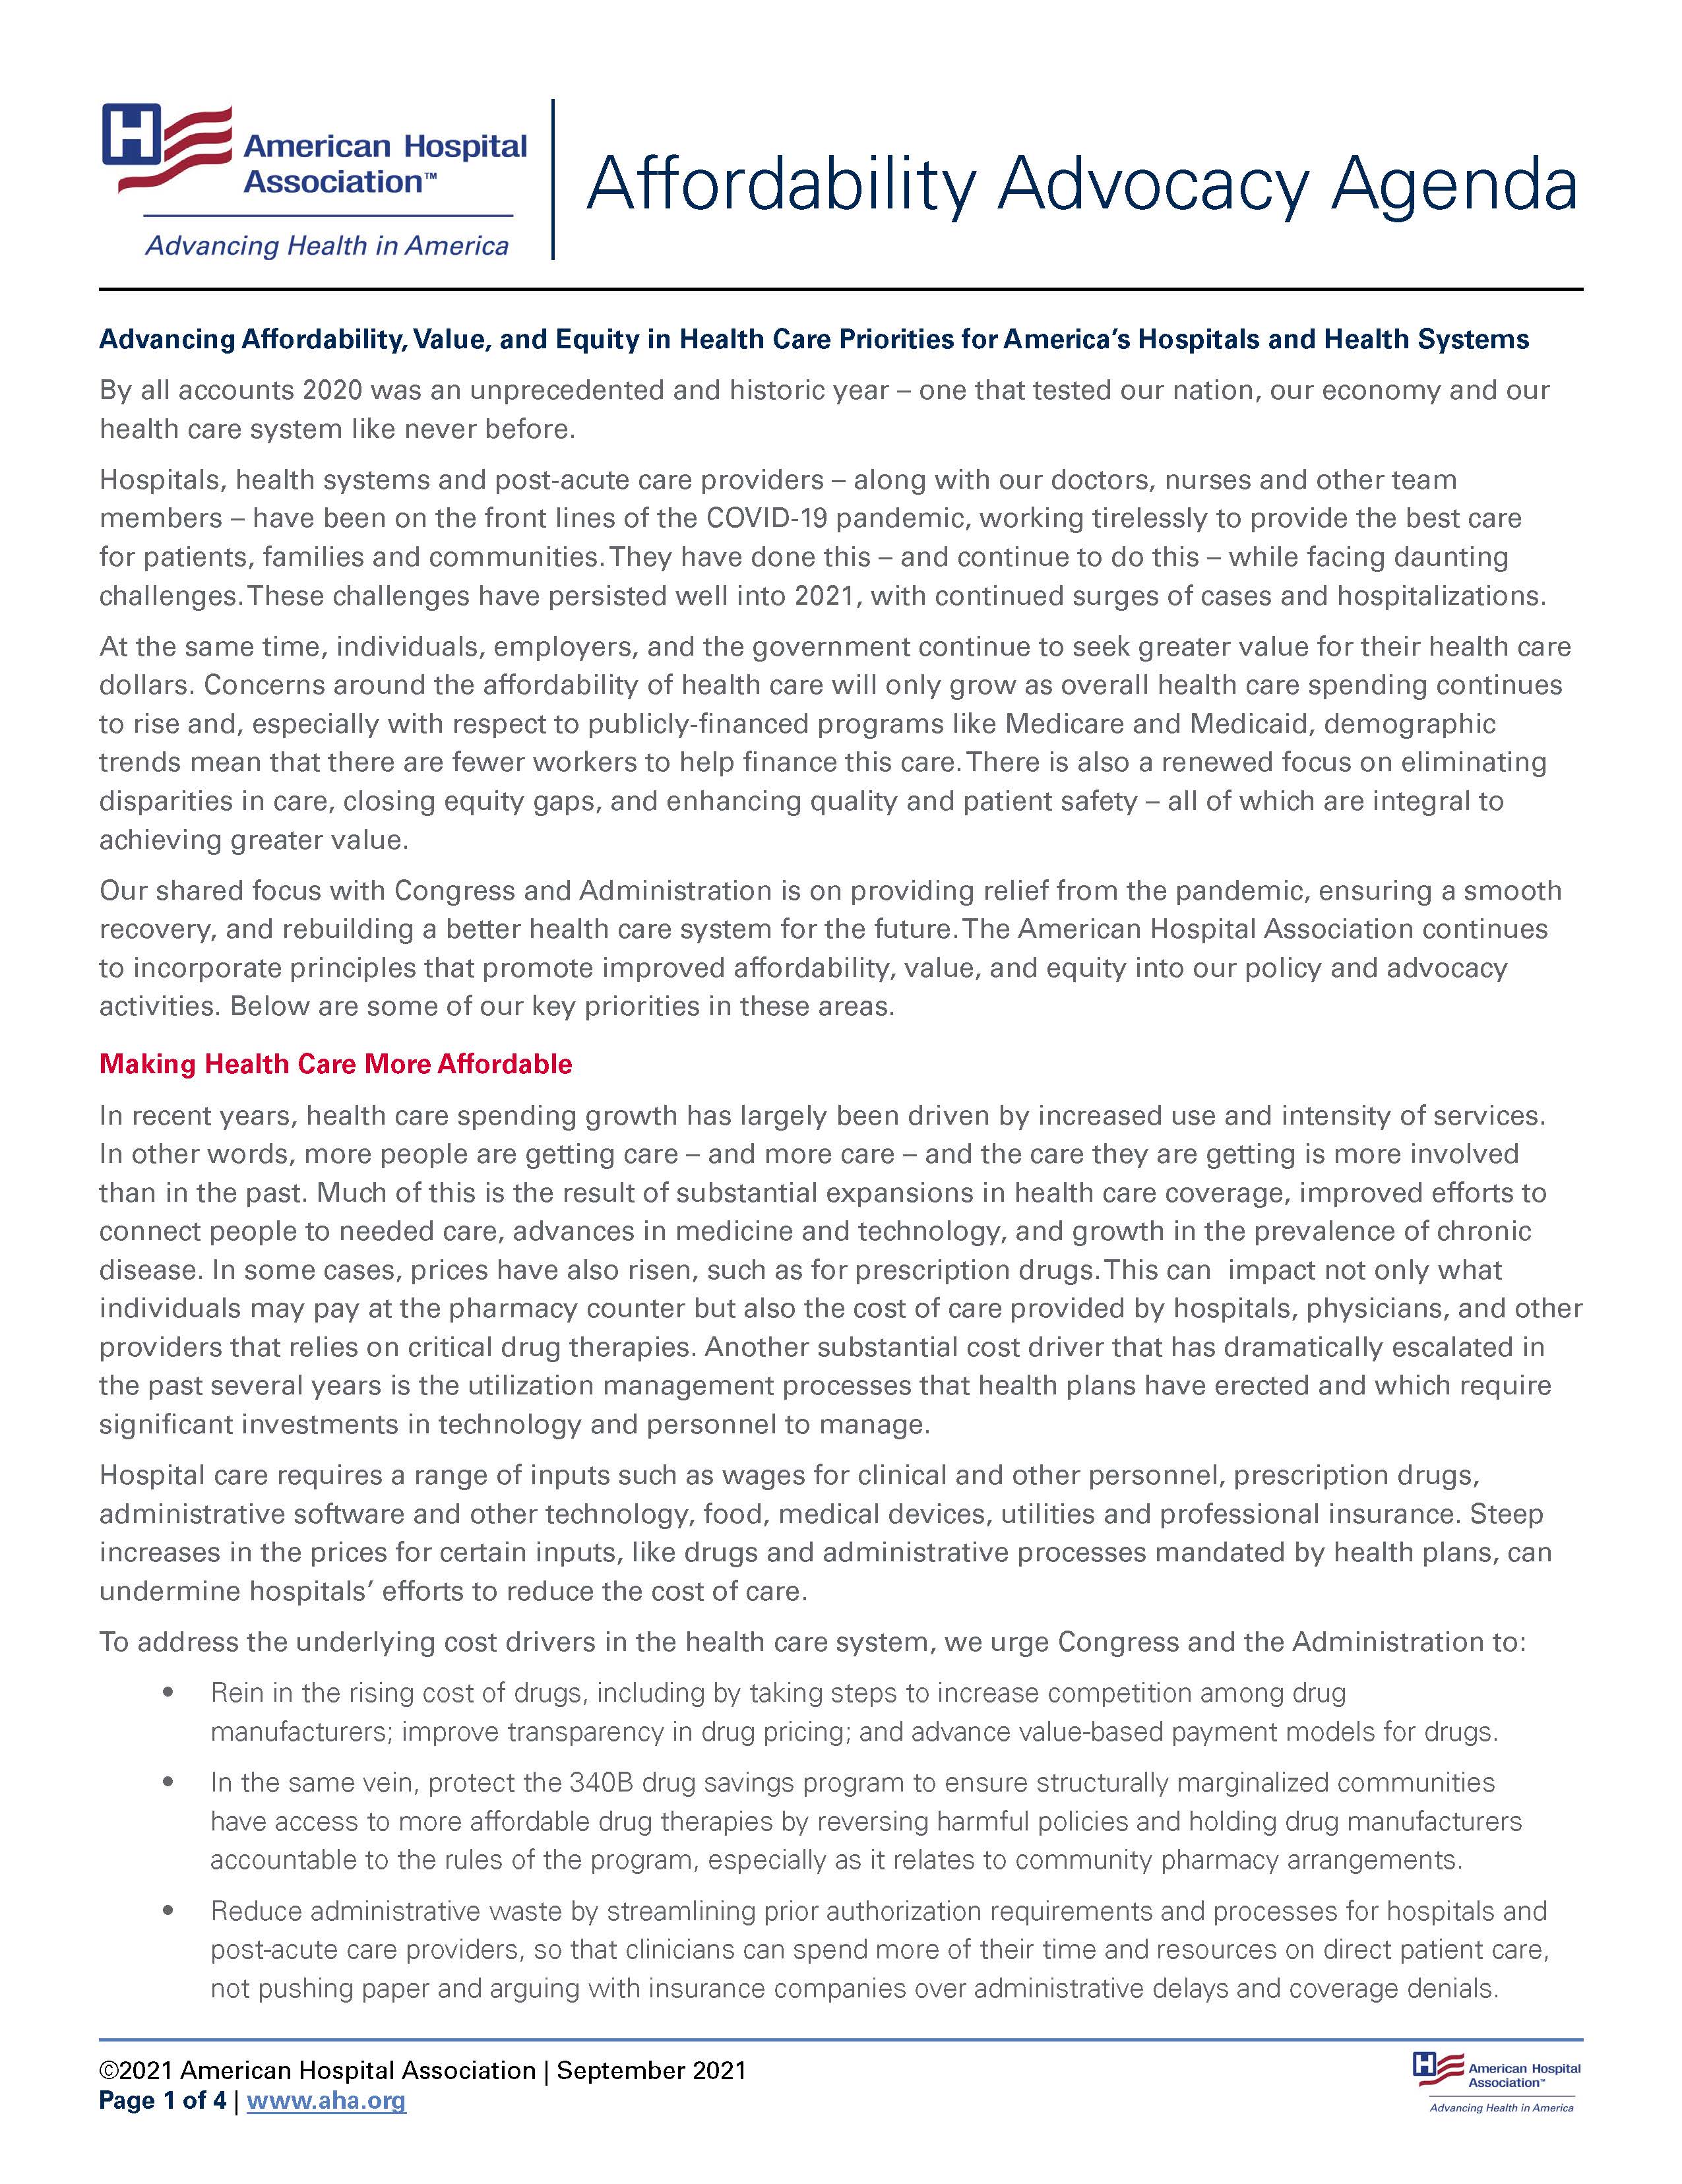 AHA Affordability Advocacy Agenda 2021 page one.